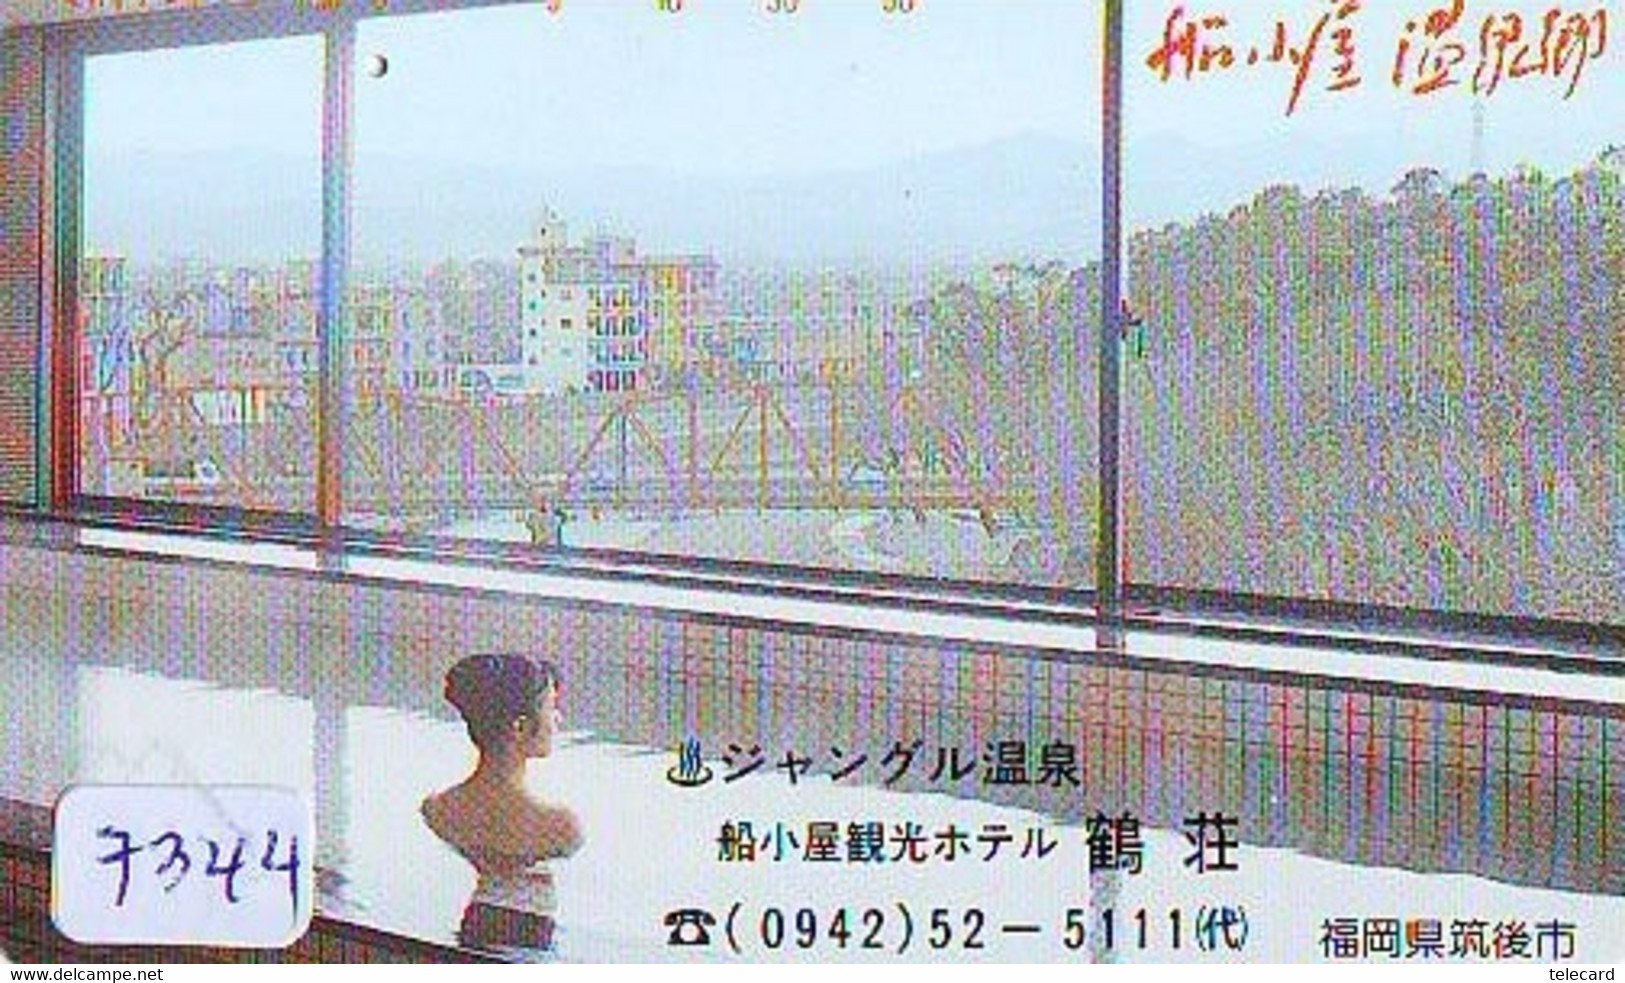 Télécarte Japon * FEMME EROTIQUE (7344) BATH * PHONECARD JAPAN * TELEFONKARTE *  BATHCLOTHES LINGERIE - Mode